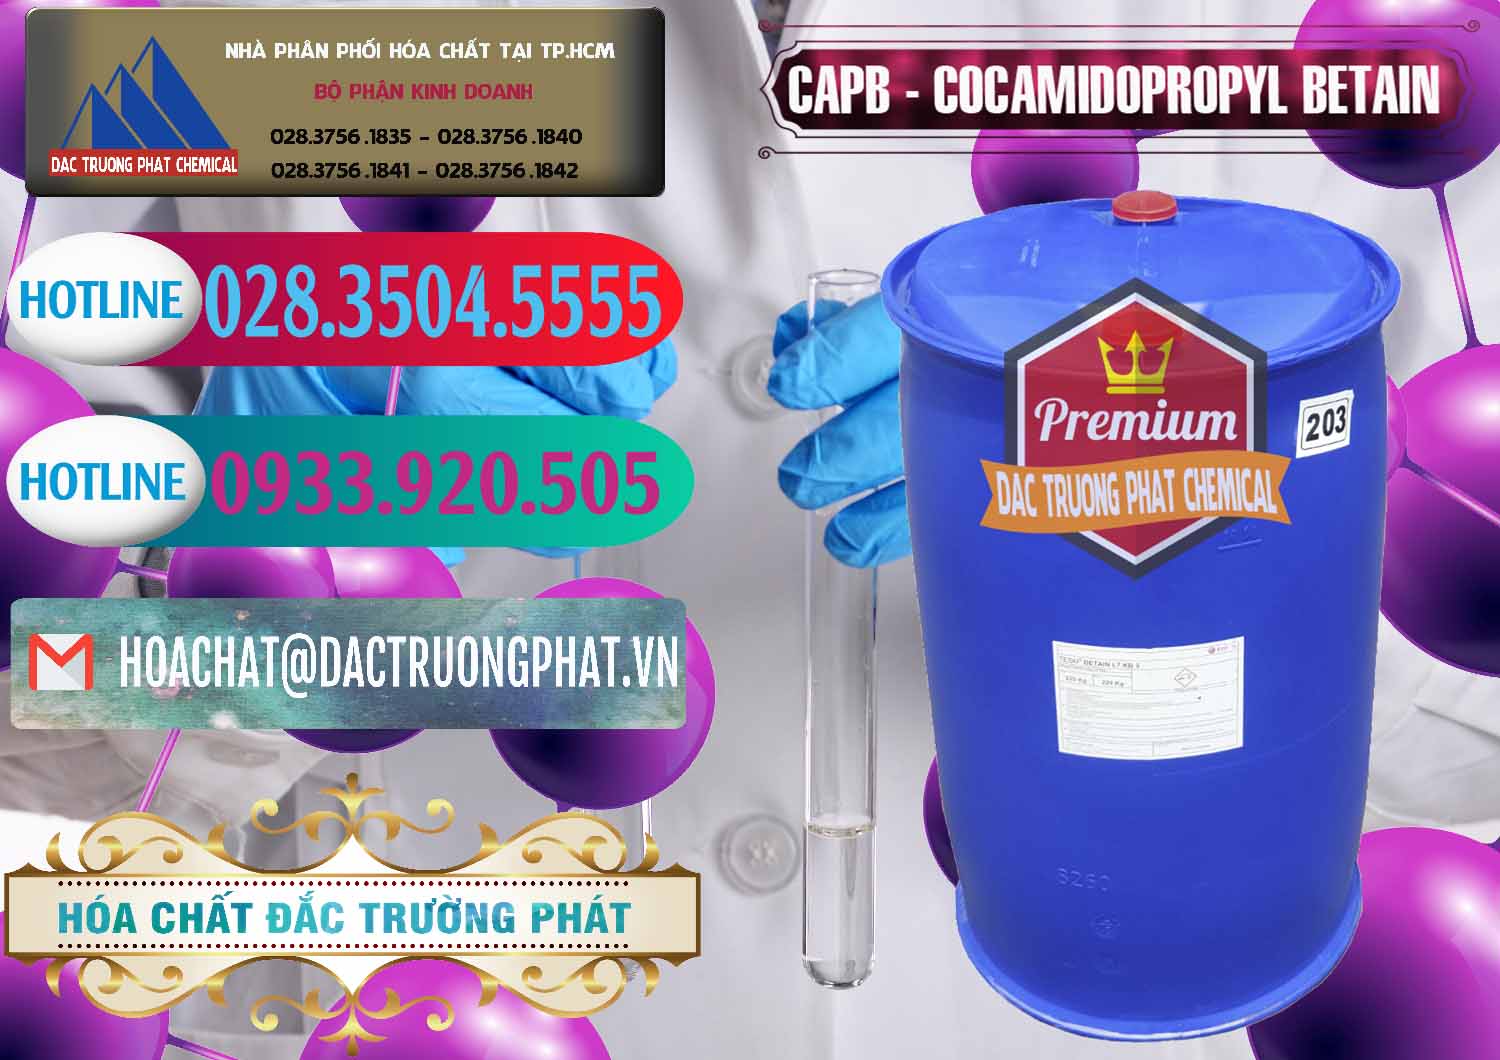 Đơn vị phân phối _ bán Cocamidopropyl Betaine - CAPB Tego Indonesia - 0327 - Cty chuyên bán & cung cấp hóa chất tại TP.HCM - truongphat.vn